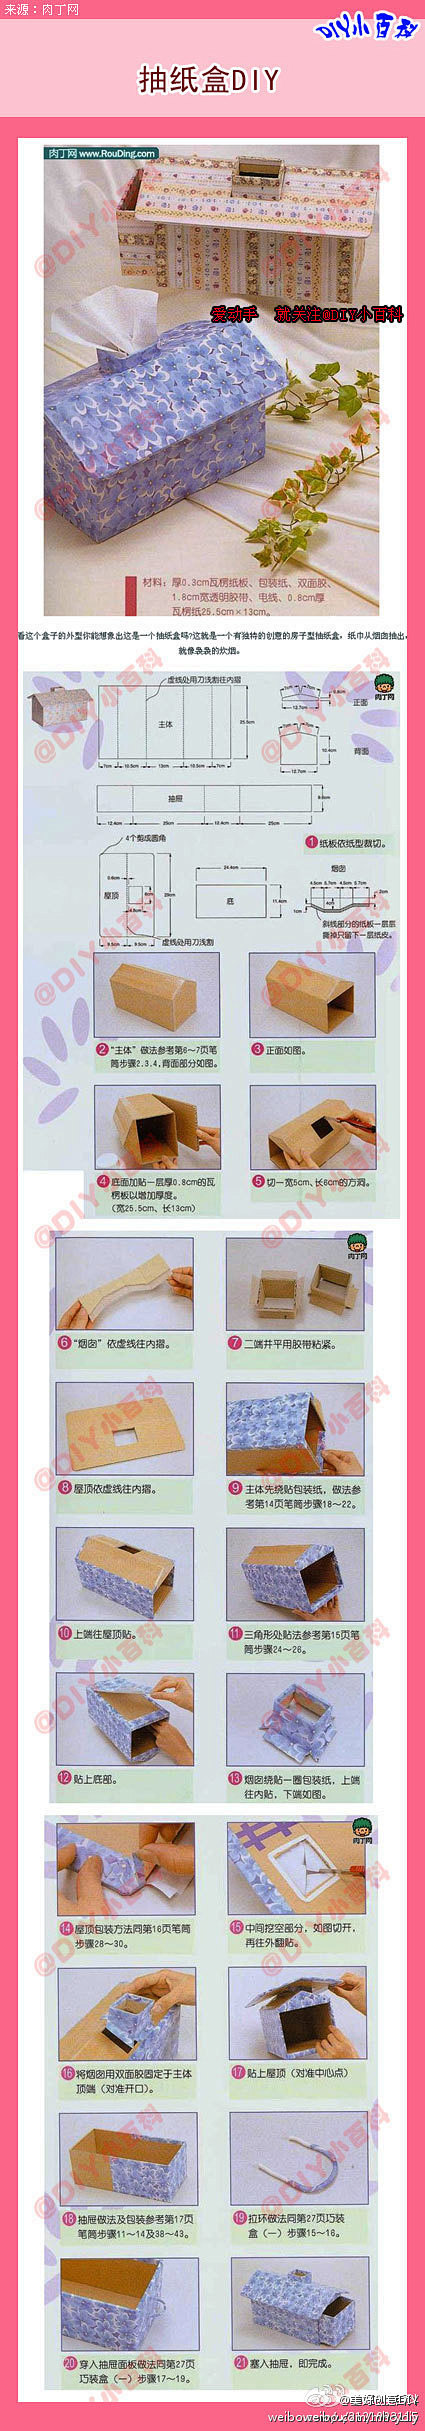 教你DIY纸巾盒，赶快学学吧~~~>>>...